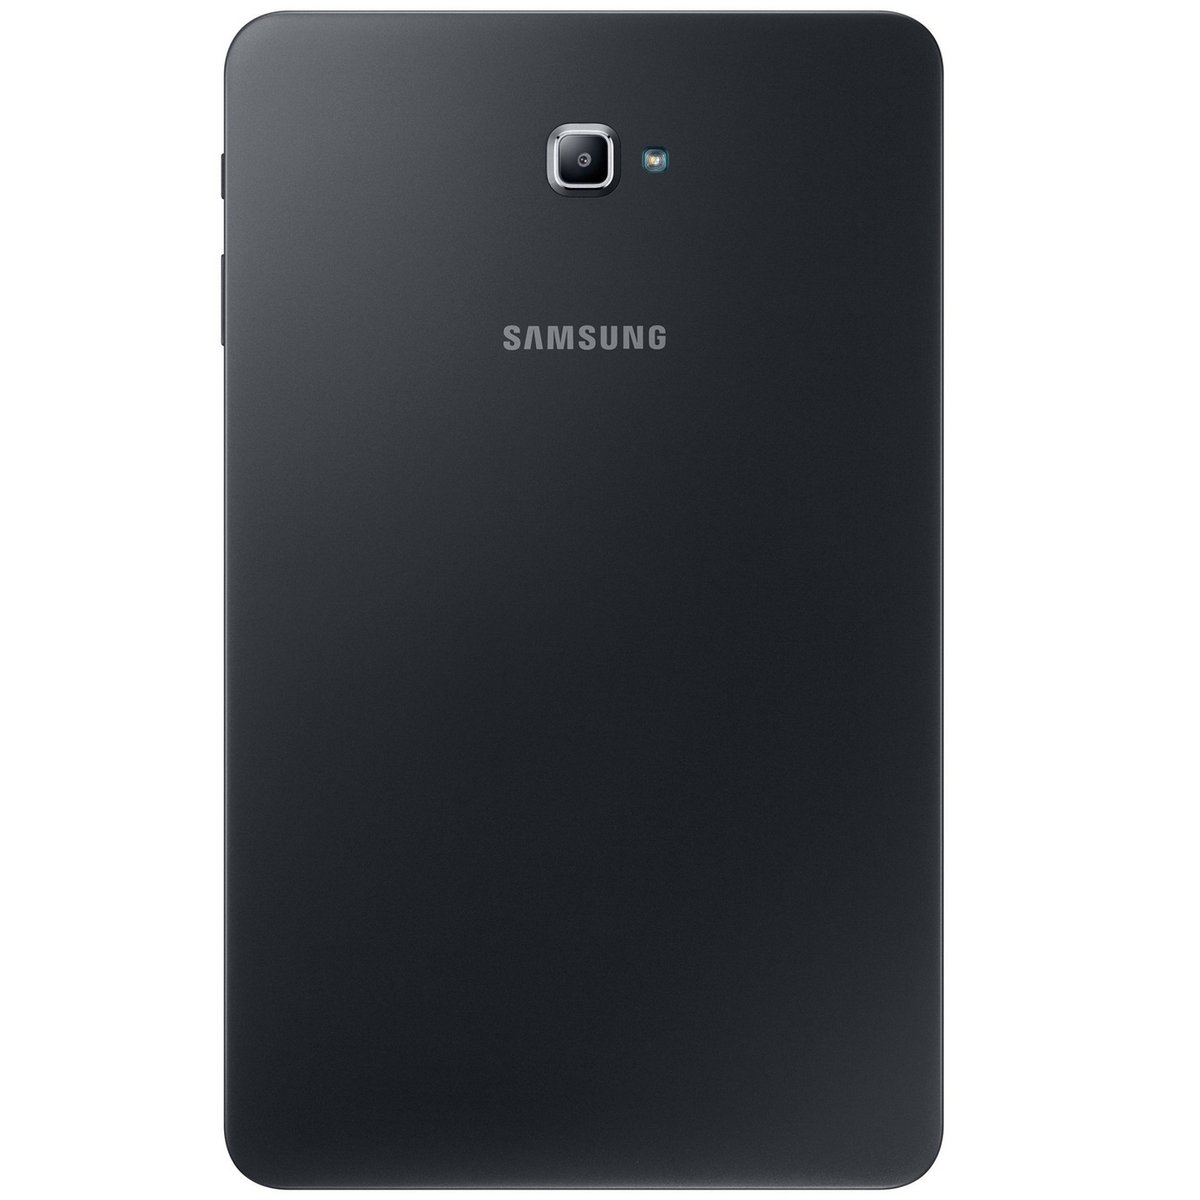 Samsung Tab A SM-T585 10.1inch 16GB LTE Black